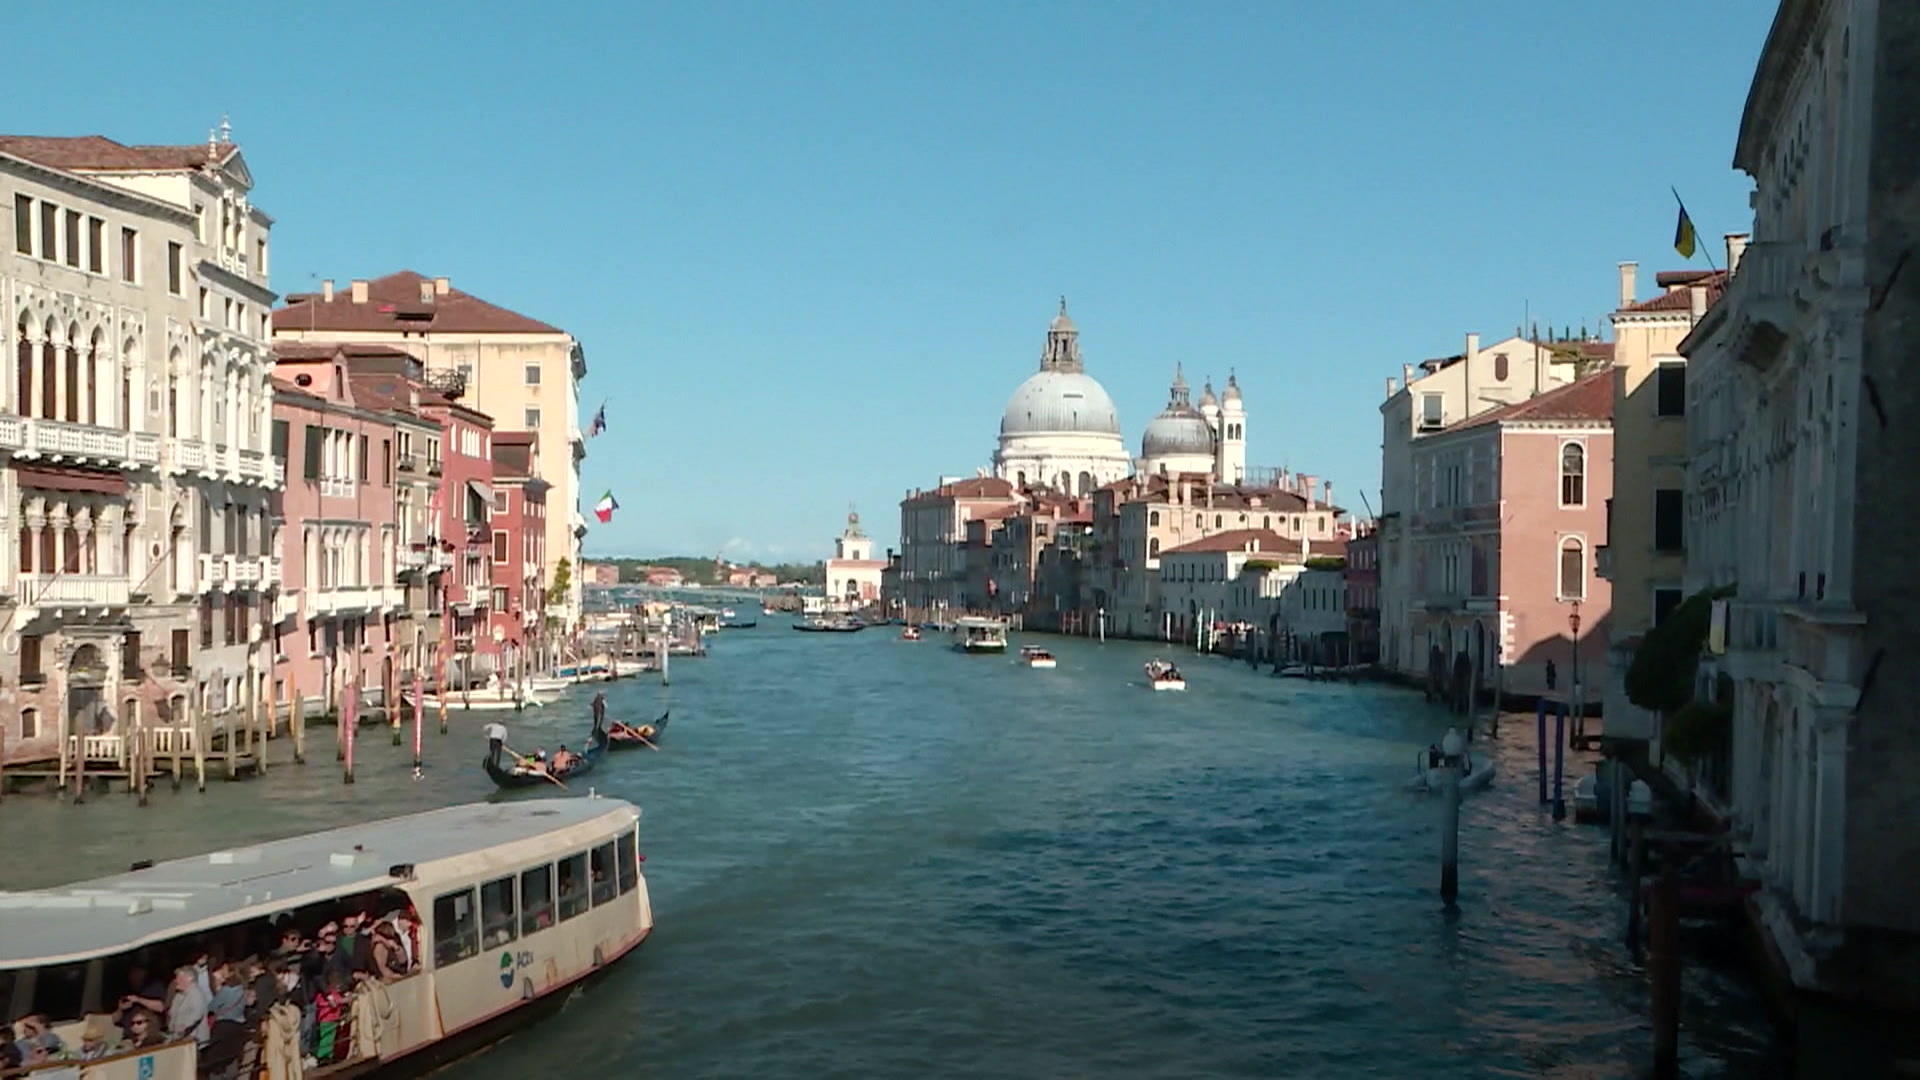 Venedig erhebt nun Eintrittsgelder für seine Altstadt.  Jetzt müssen Touristen zahlen